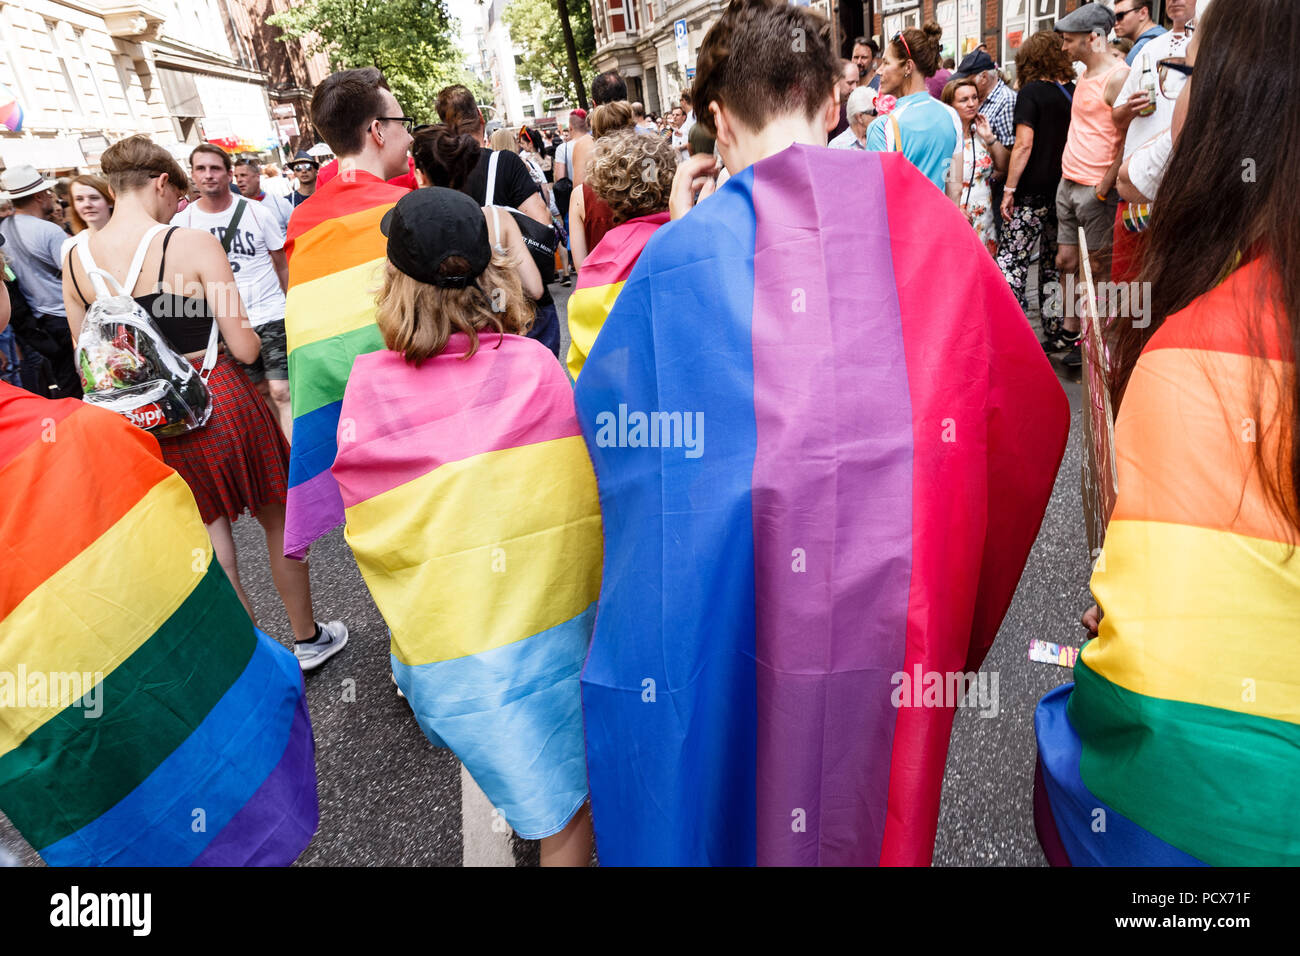 Трансгендеры новости. Трансгендеры в Германии. Квир парад. Парад трансвеститов в Германии фото.